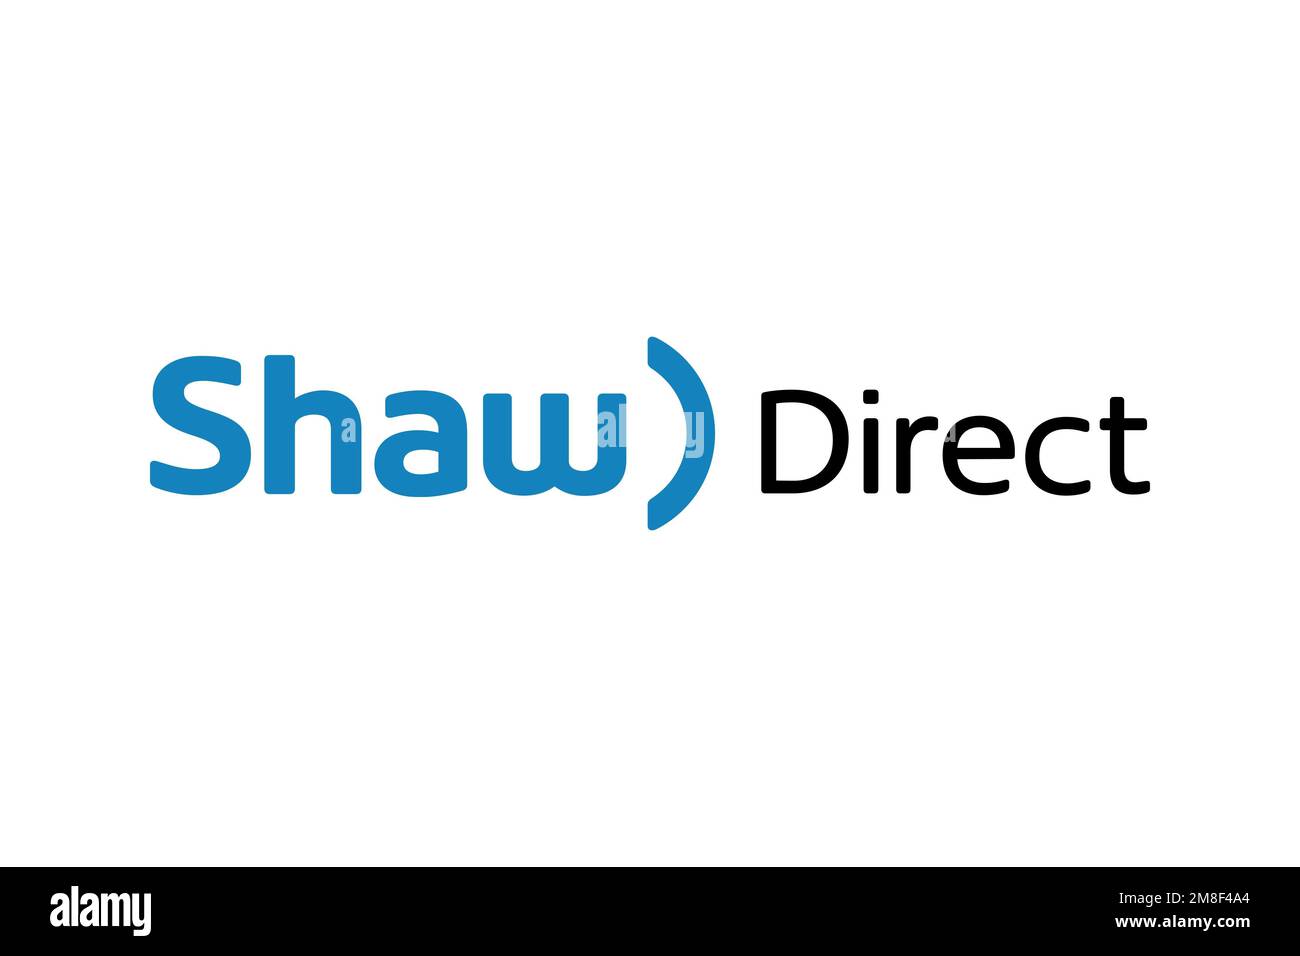 Shaw Direct, Logo, White Background Stock Photo